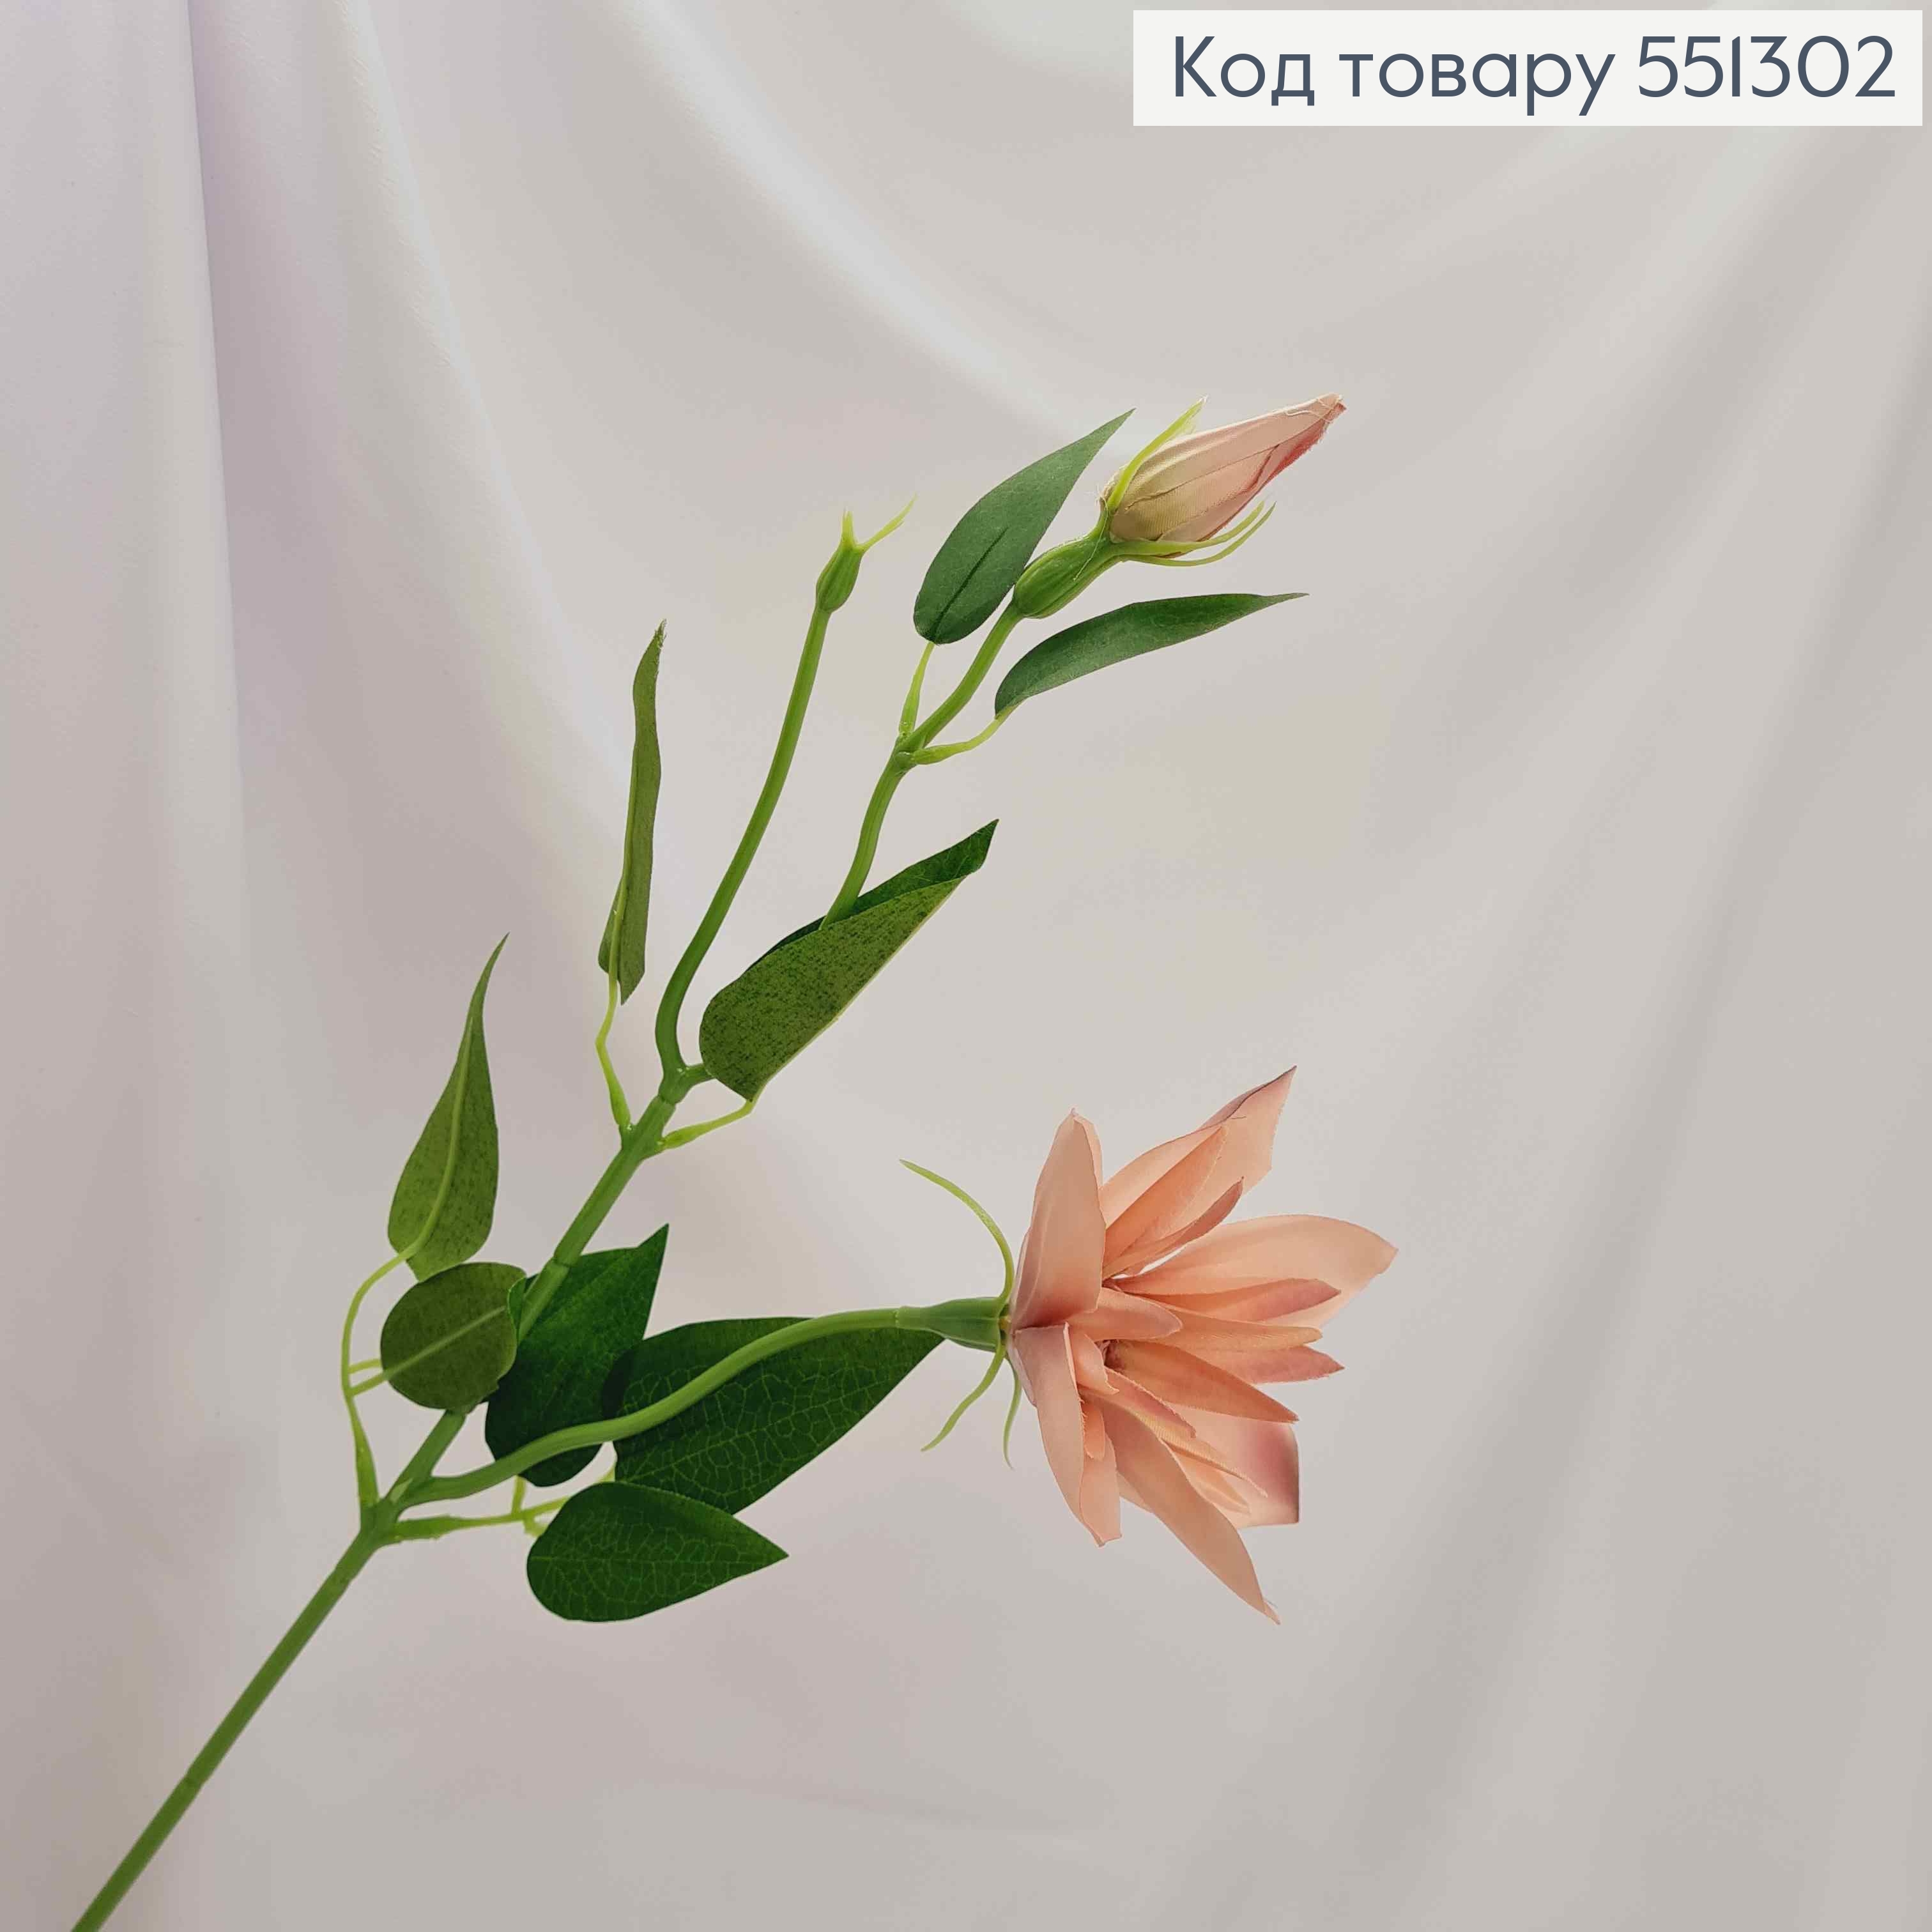 Искусственные цветы, веточка Клематис, ПУДРОВОГО цвета, 1 цветок + 1 бутон, на металлическом стержне, 47см 551302 фото 2